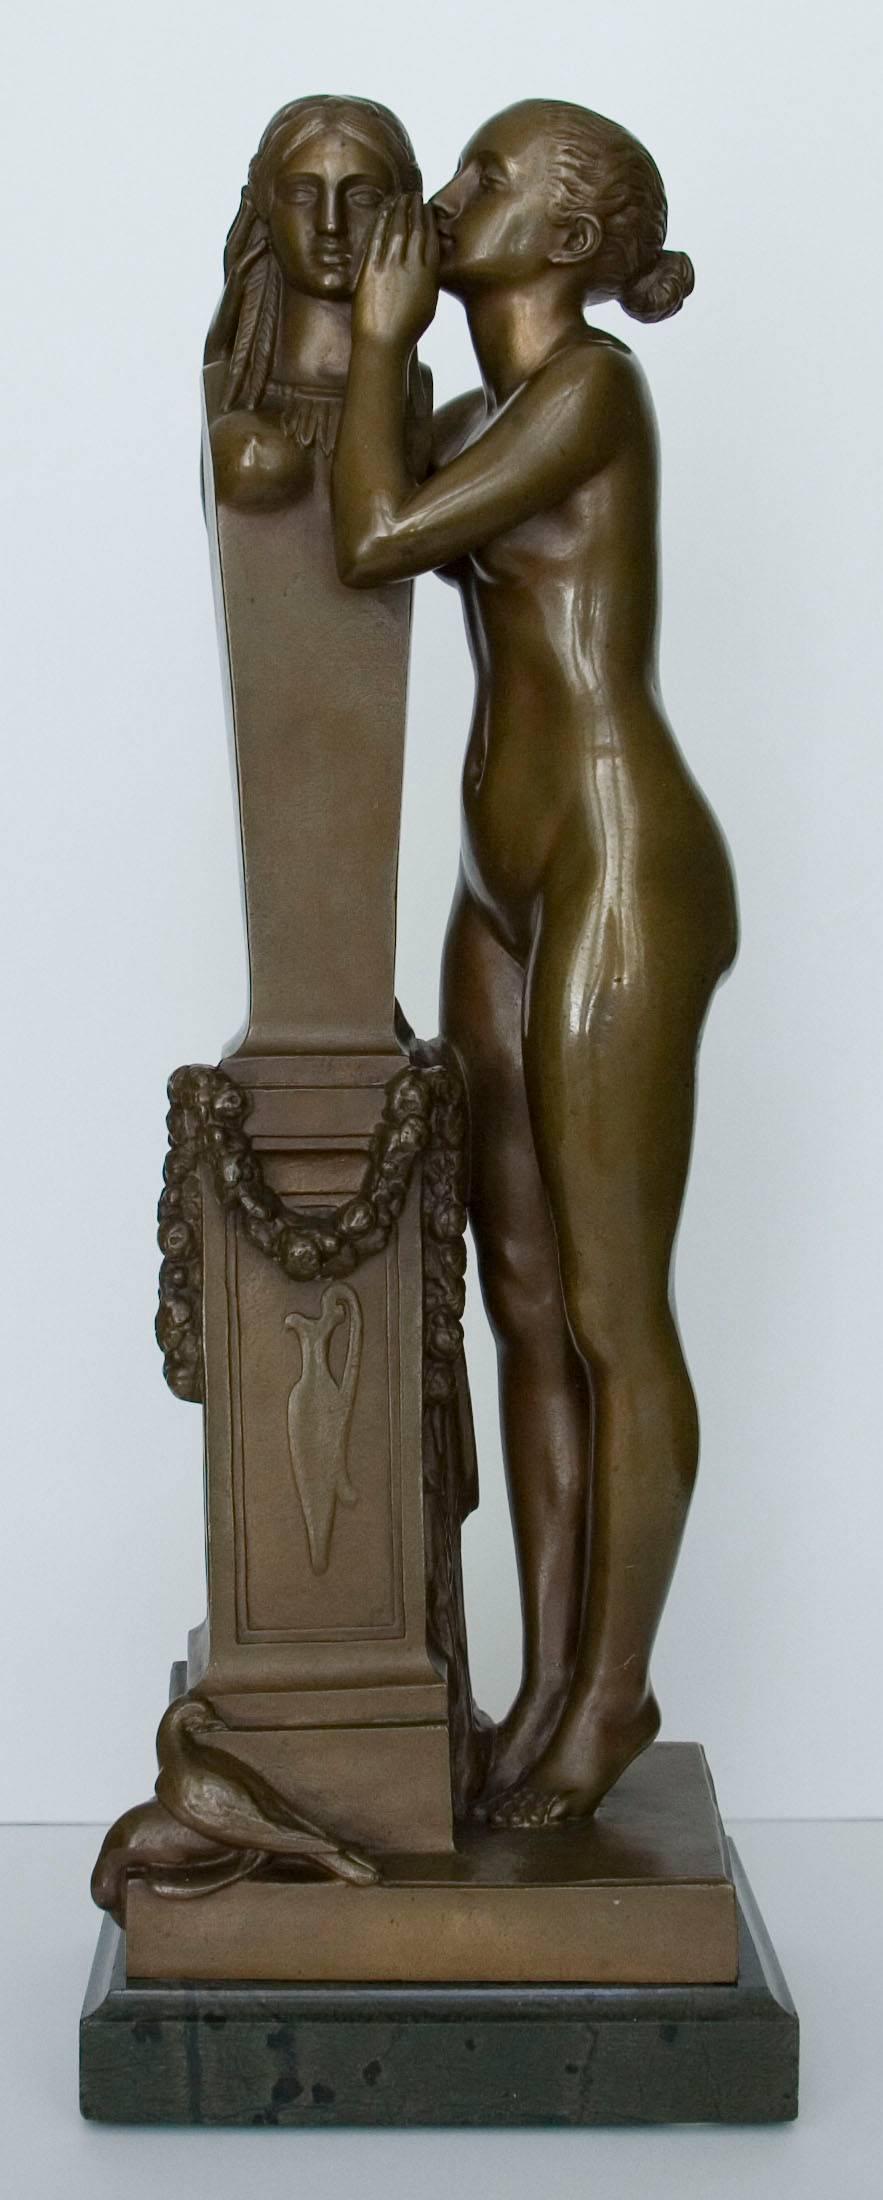 François Jouffroy Figurative Sculpture - Premier secret confié à Vénus (First secret entrusted to Venus) - Bronze